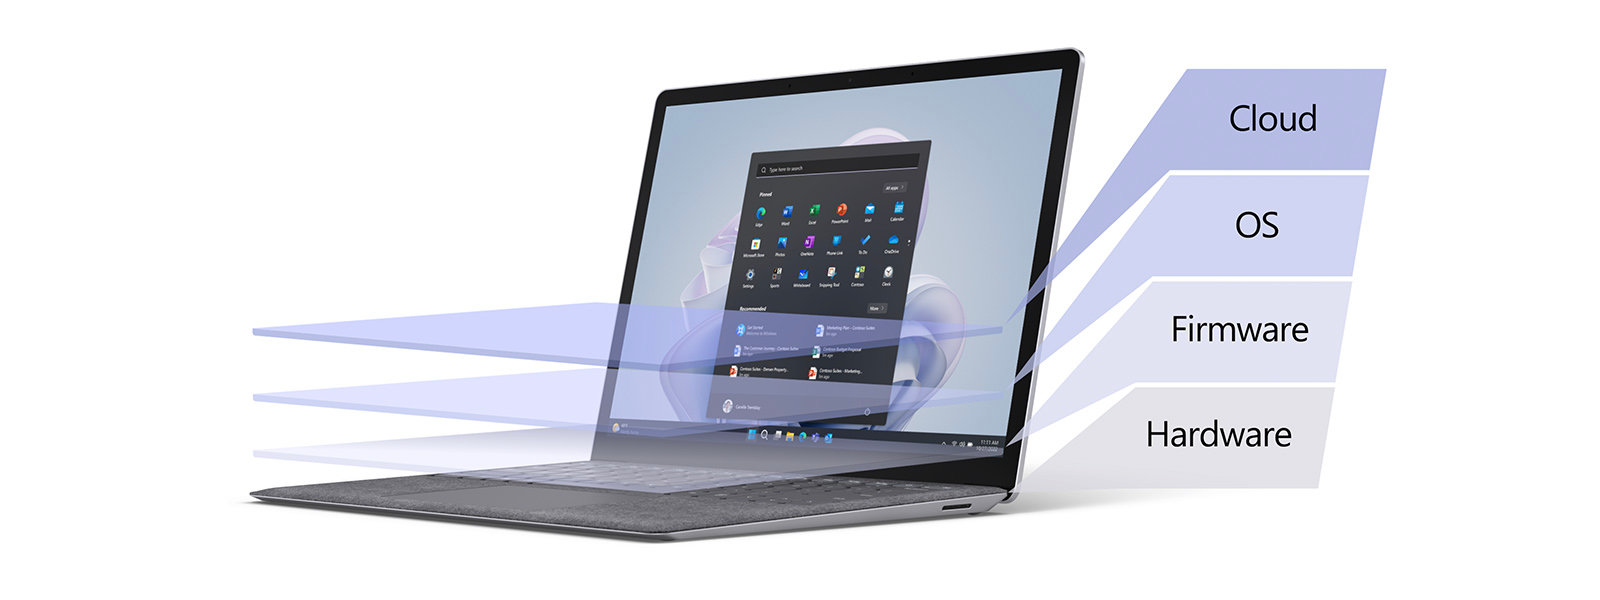 Surface 筆記型電腦覆蓋著顏色漸層，呈現不同的安全性層級